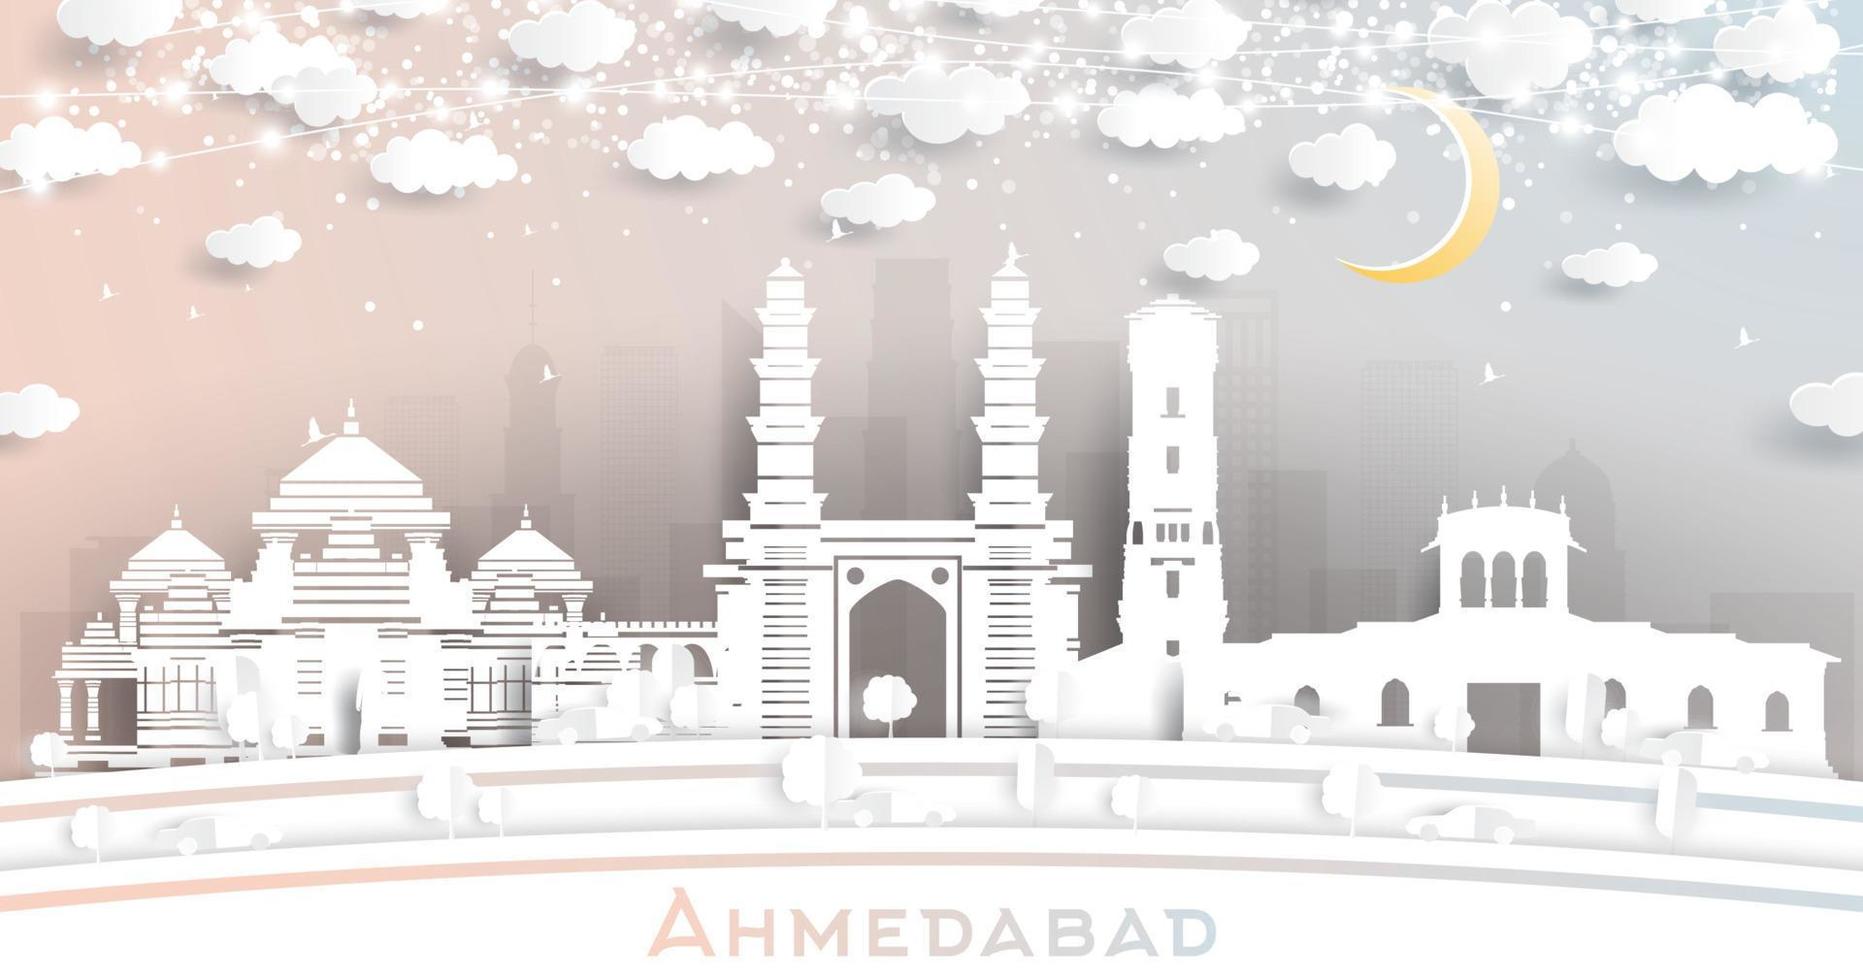 ahmedabad India città orizzonte nel carta tagliare stile con fiocchi di neve, Luna e neon ghirlanda. vettore